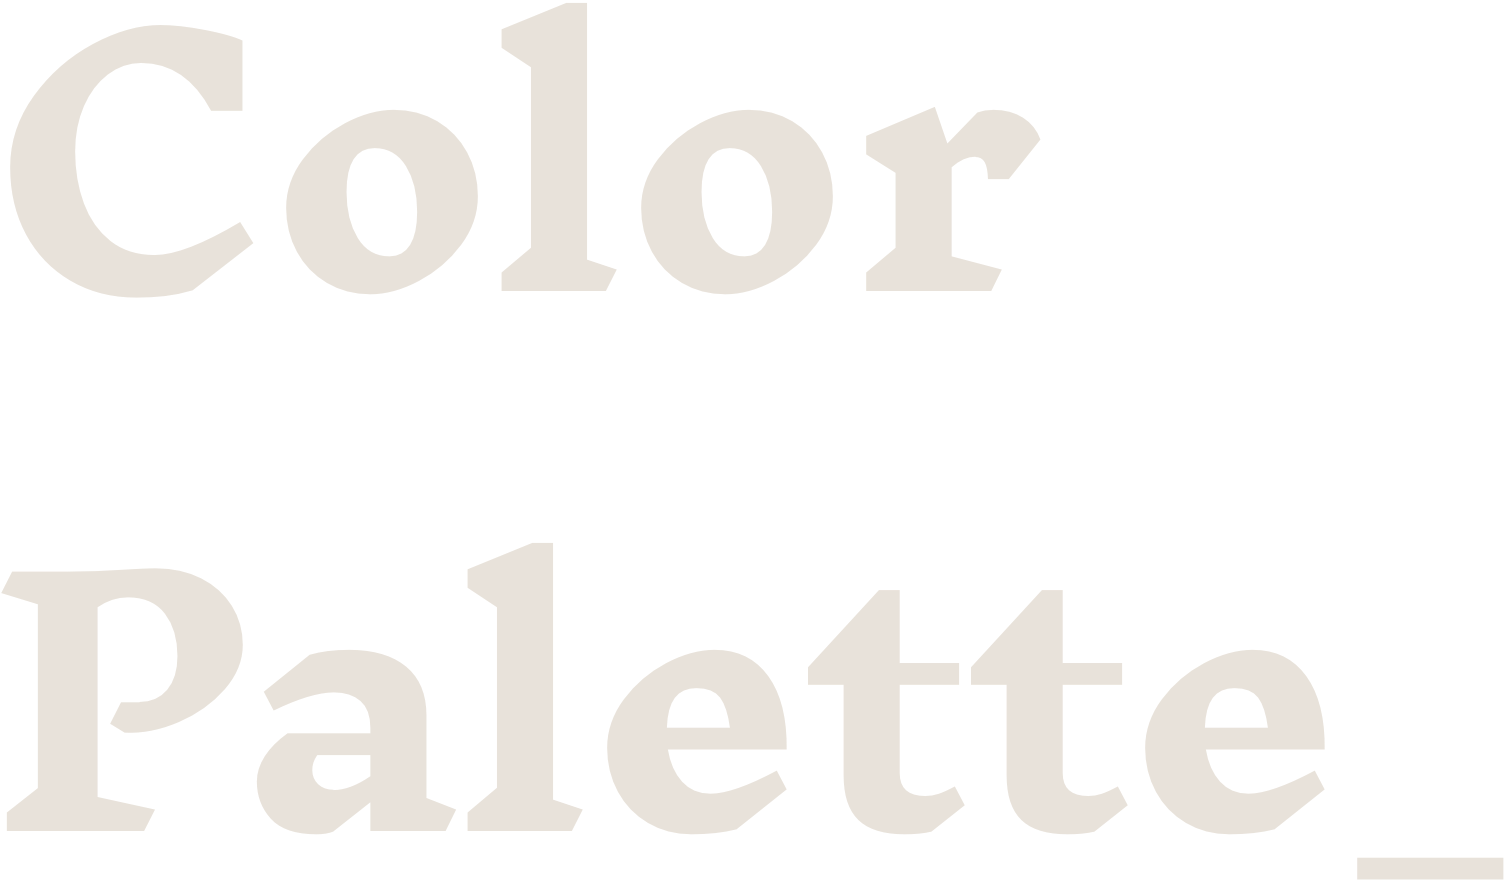 Titre de la section color palette.